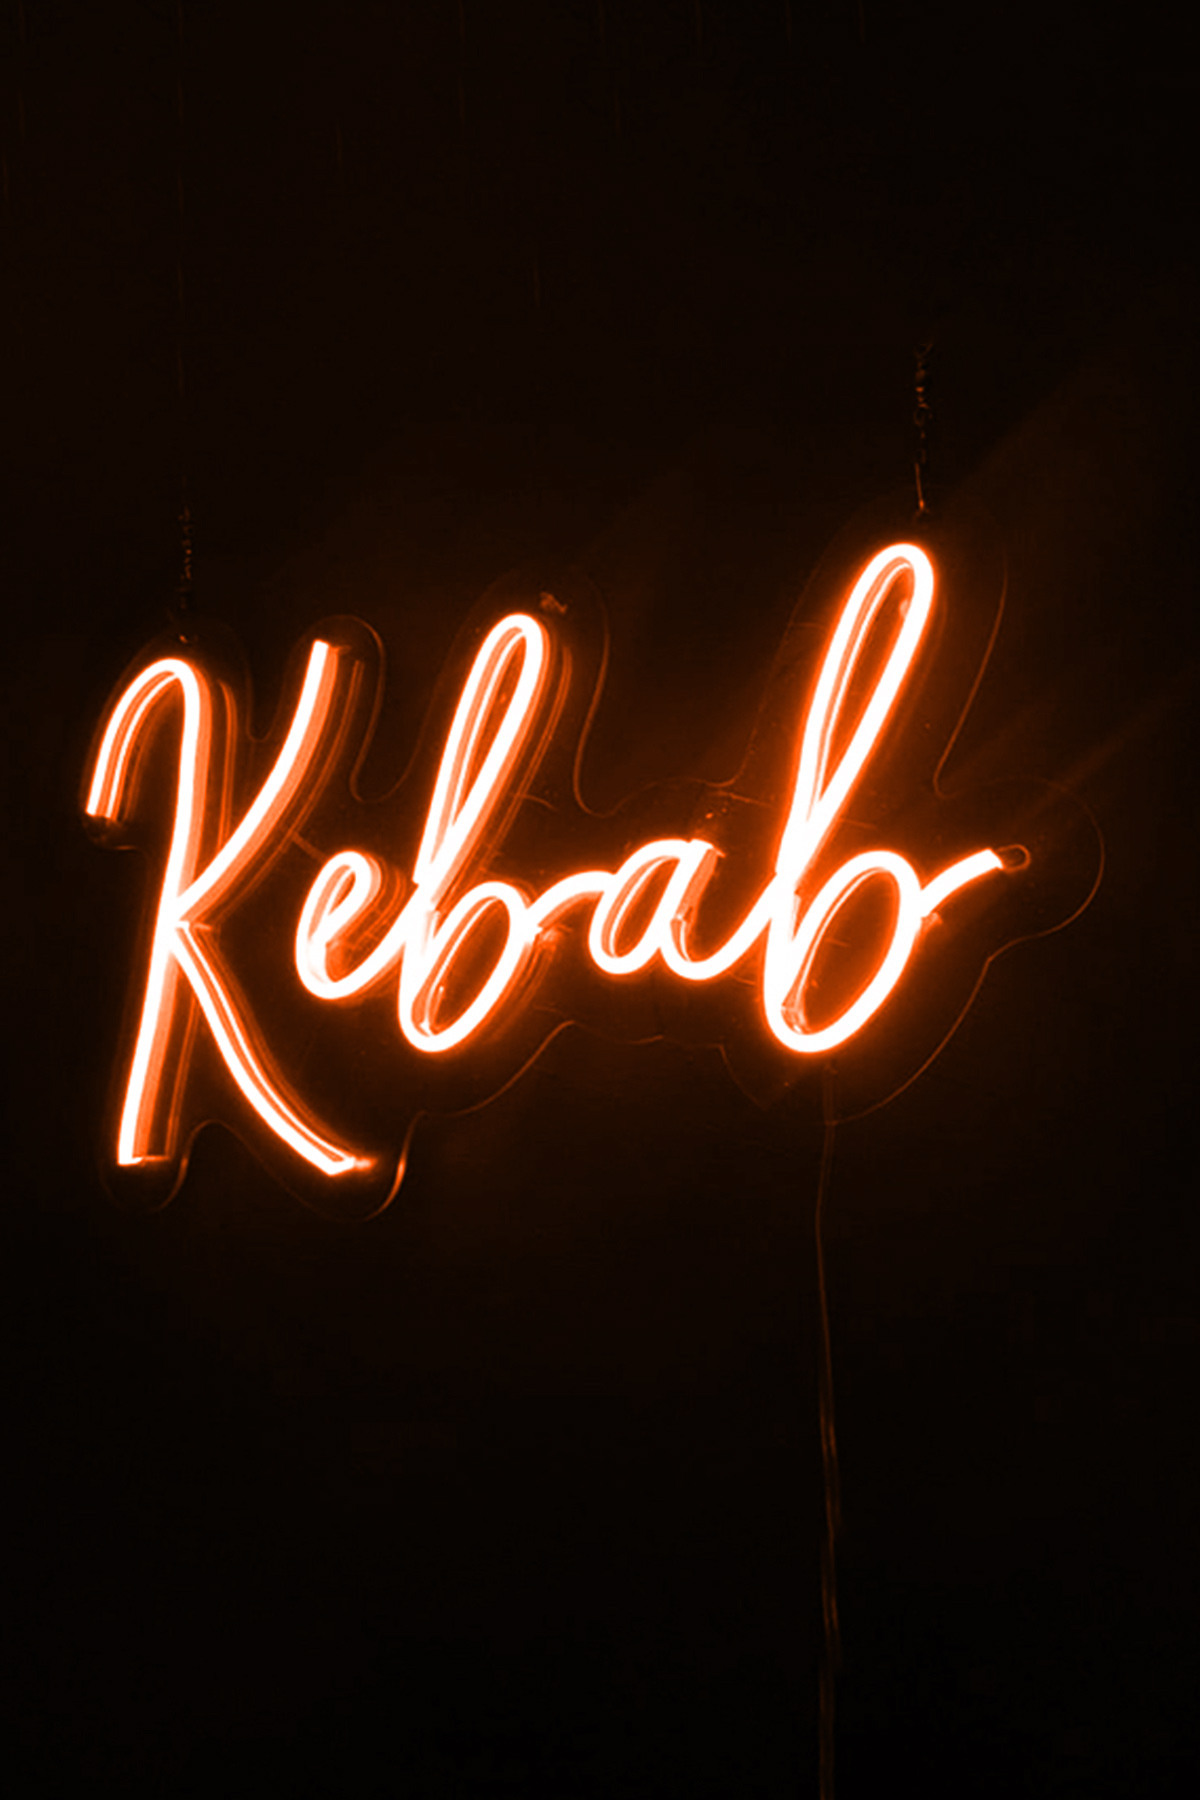 Kebab Yazılı Neon Led Işıklı Tablo Duvar Dekorasyon Ürünleri